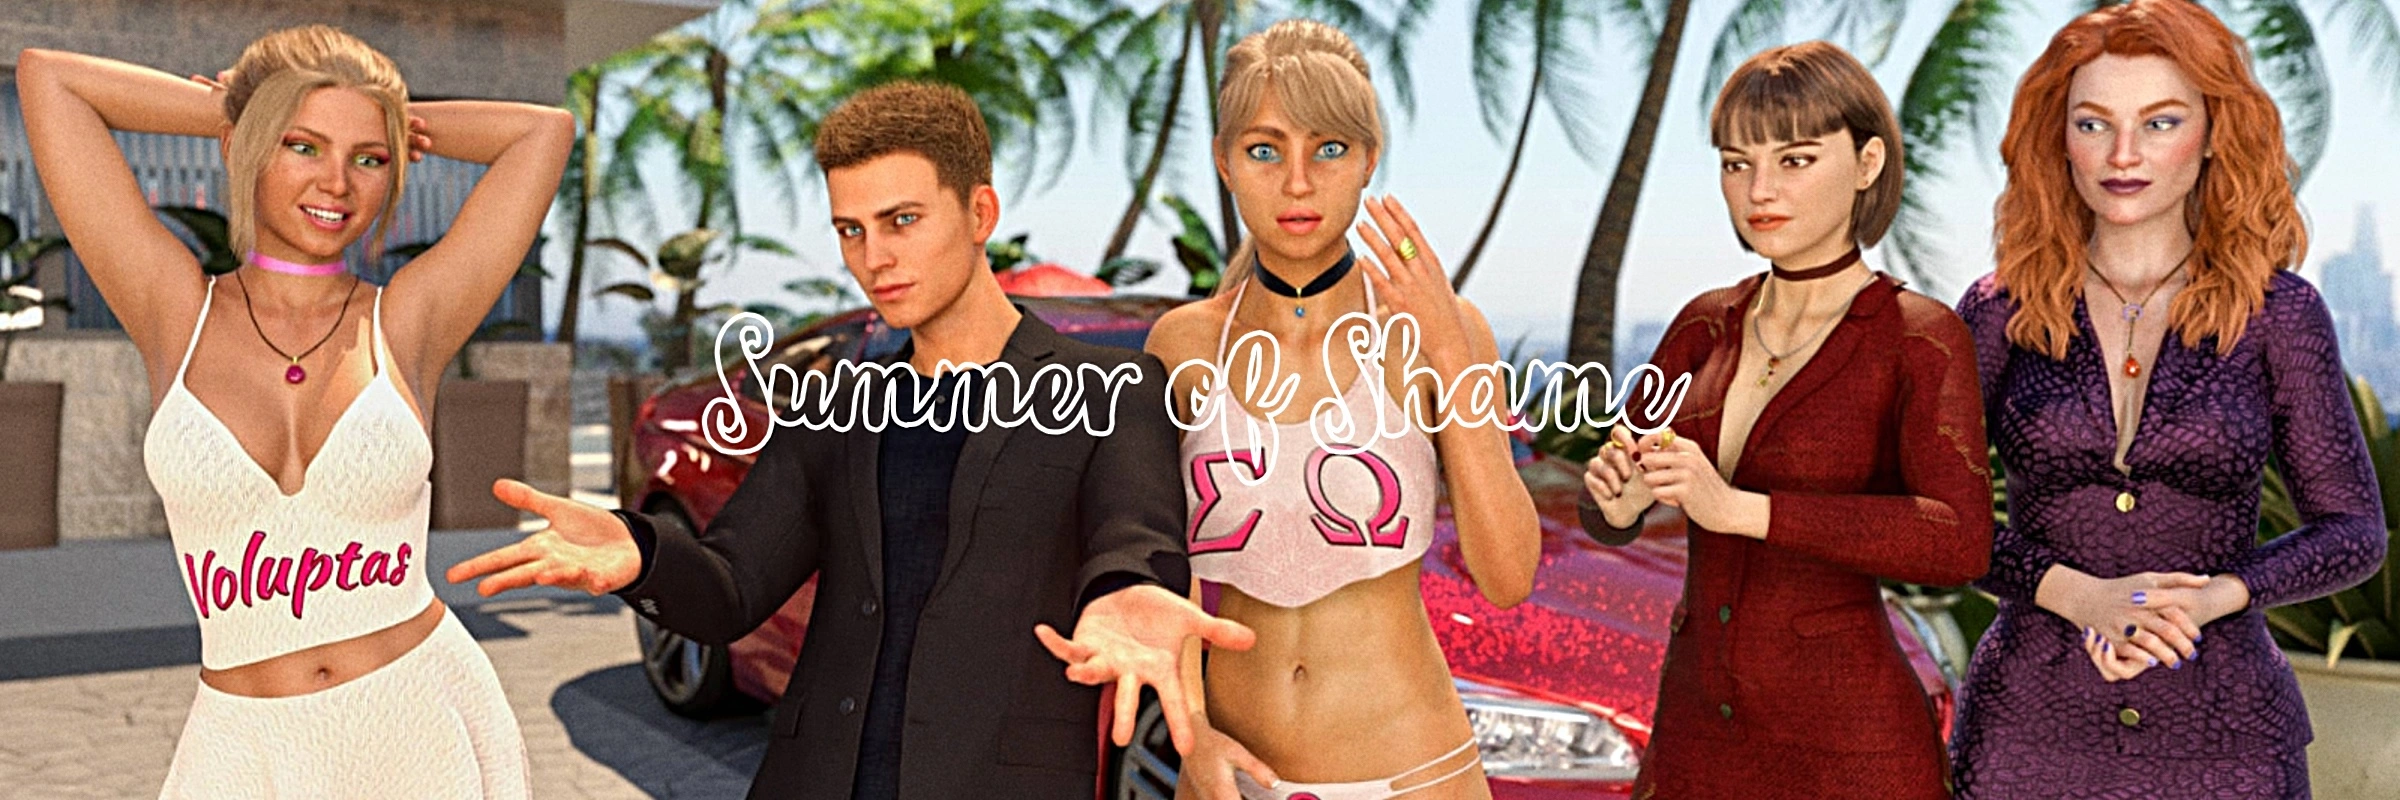 Summer of Shame [v0.4.0] main image